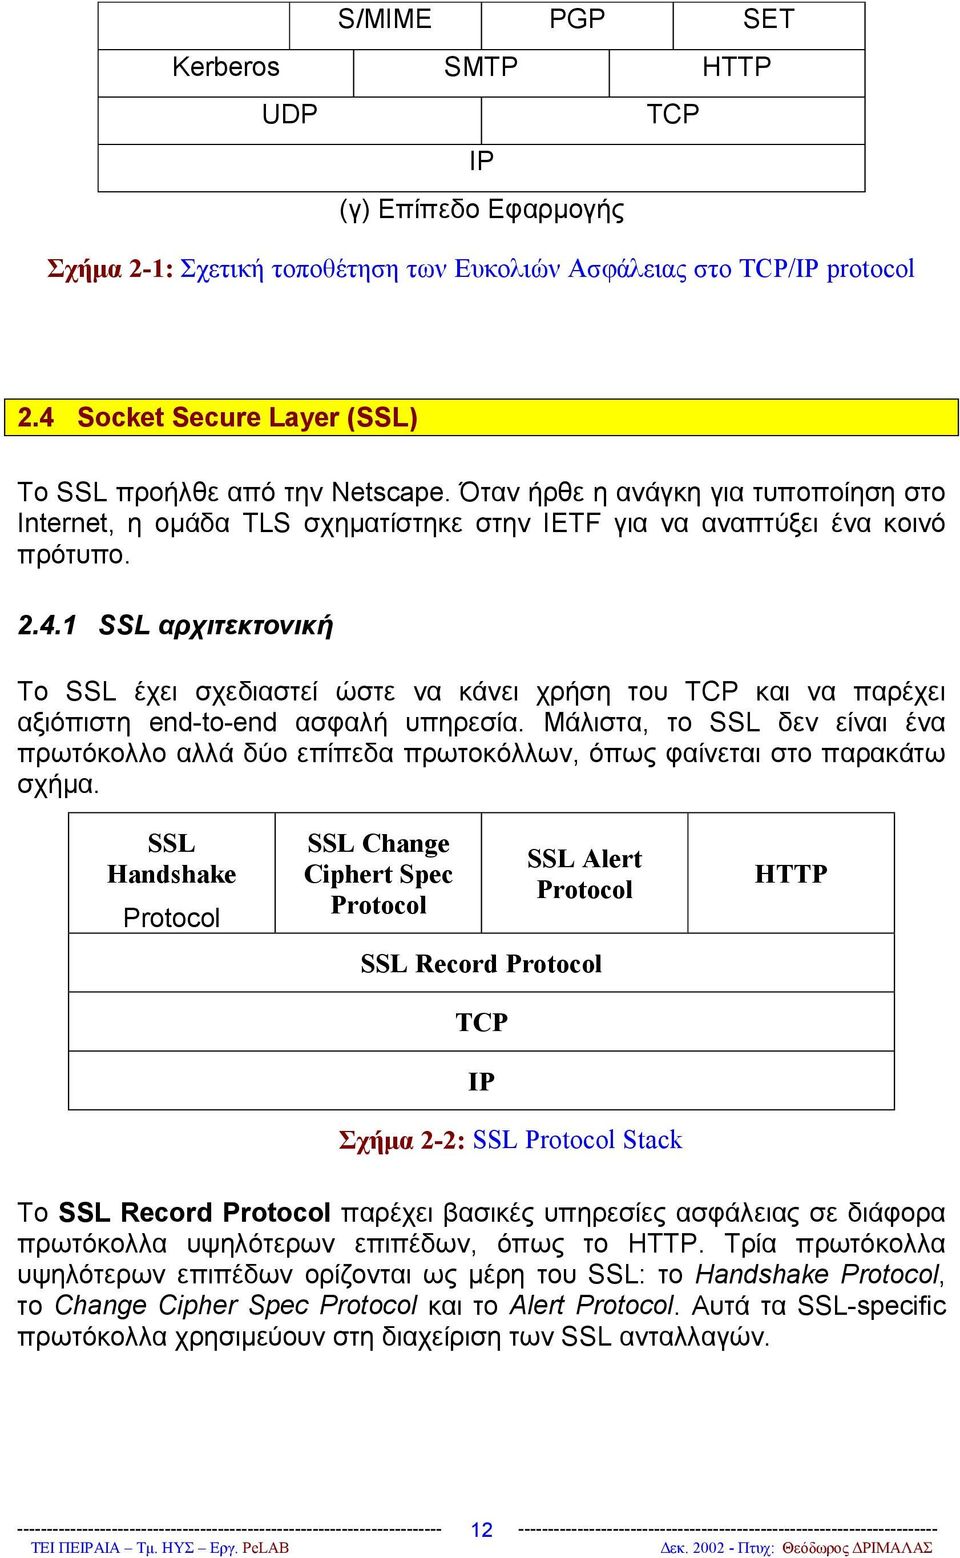 Μάλιστα, το SSL δεν είναι ένα πρωτόκολλο αλλά δύο επίπεδα πρωτοκόλλων, όπως φαίνεται στο παρακάτω σχήμα.